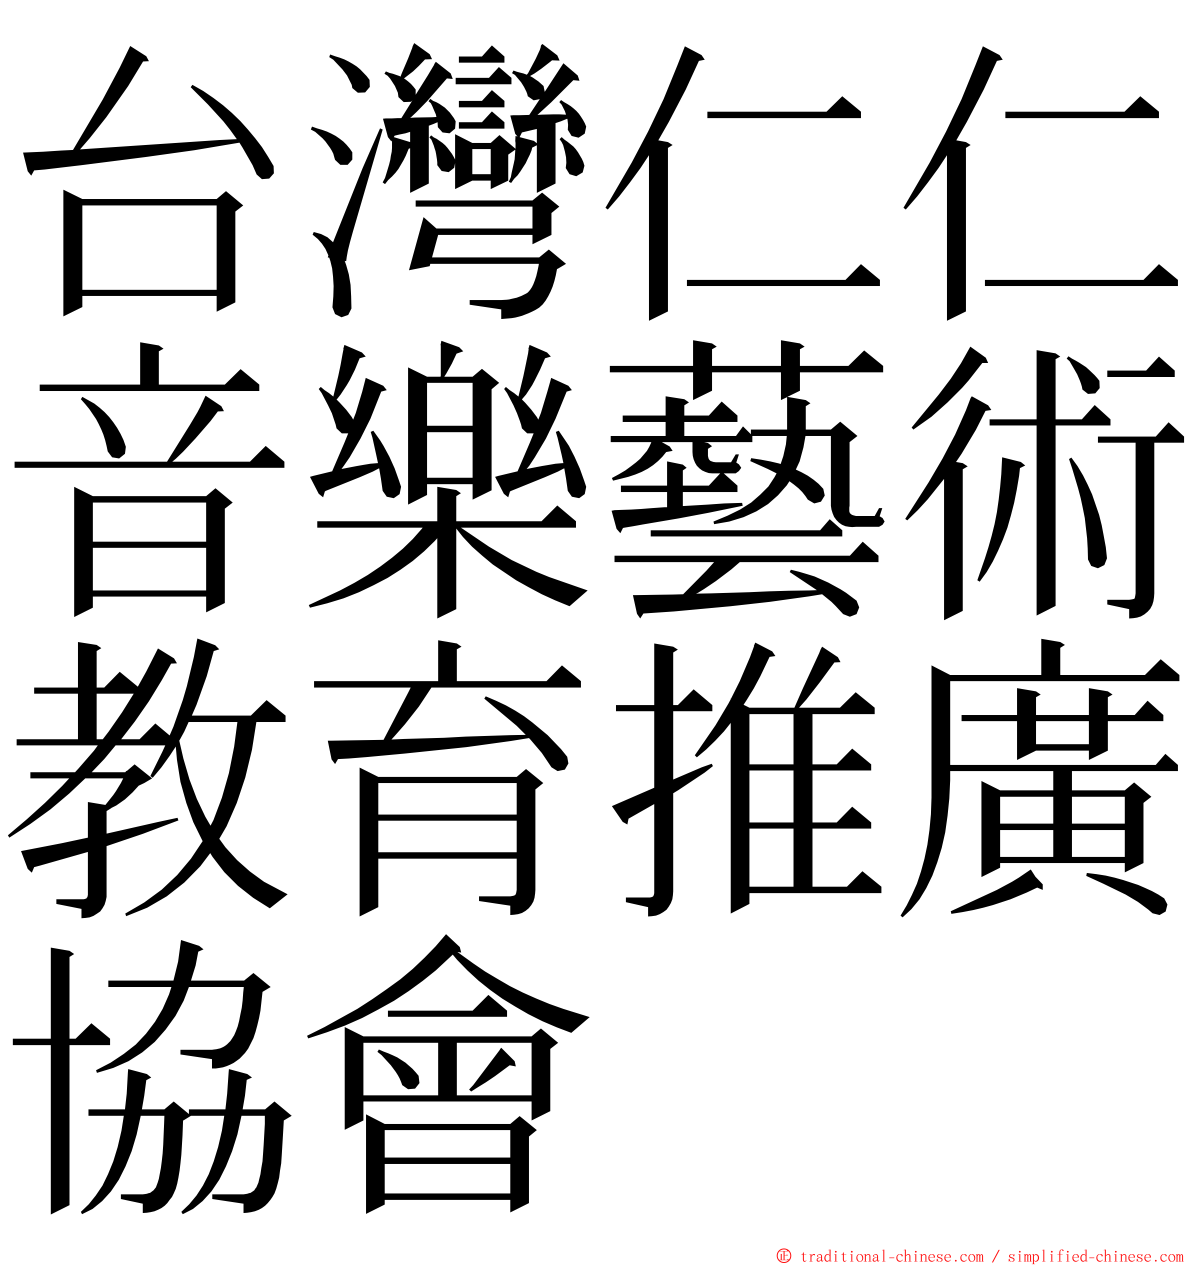 台灣仁仁音樂藝術教育推廣協會 ming font